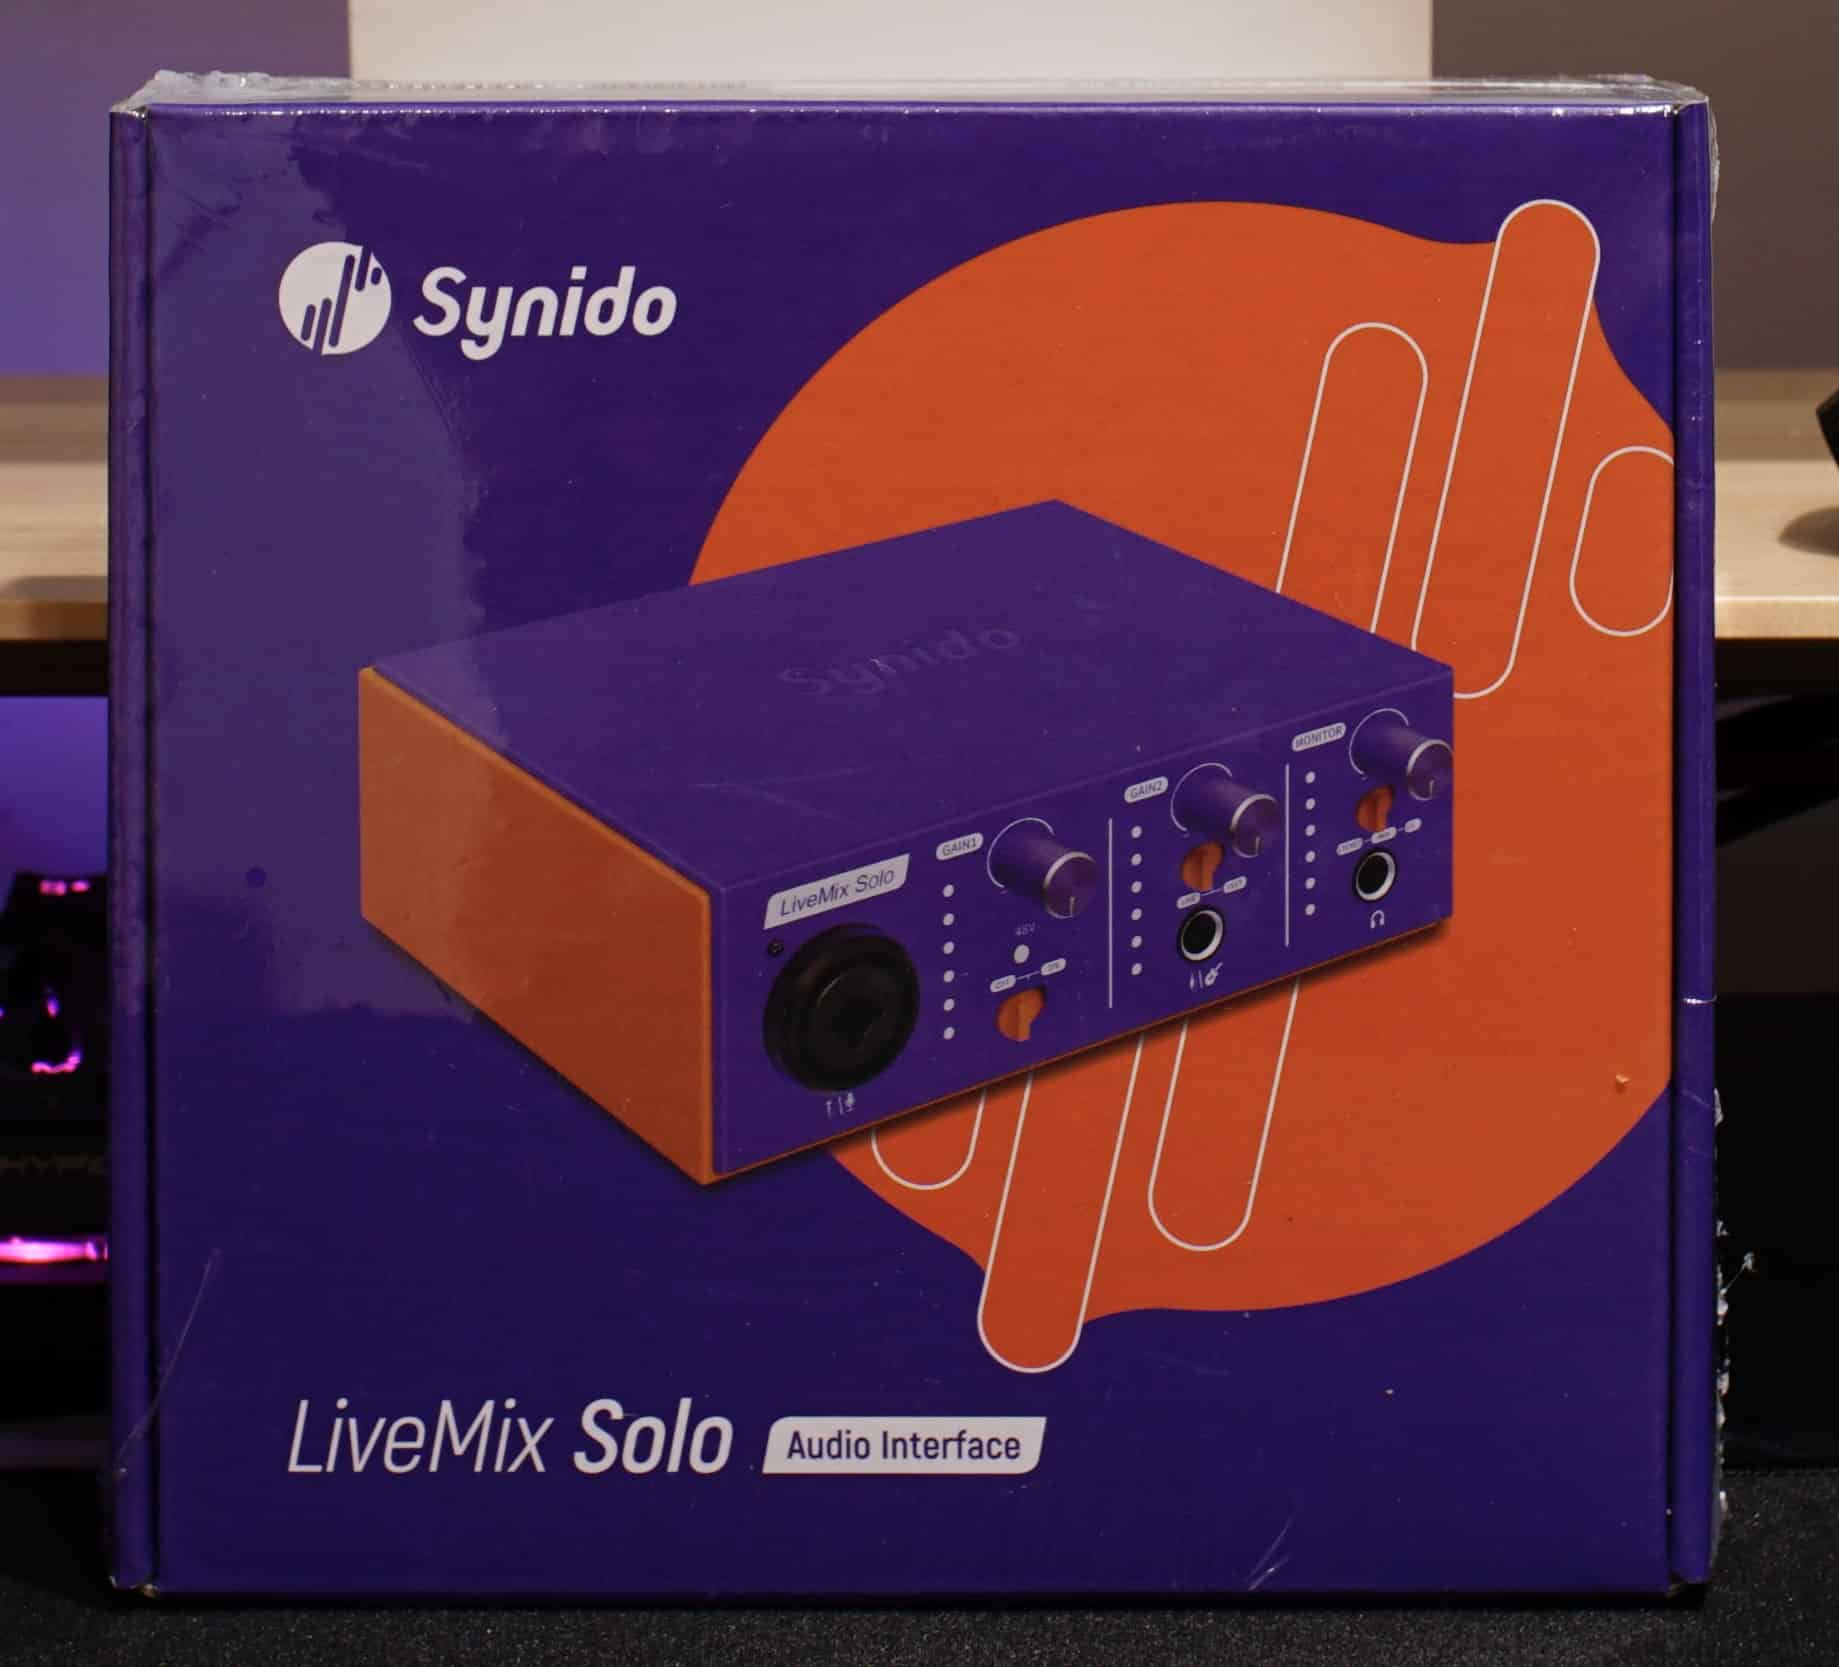 Synido LiveMix Solo Review